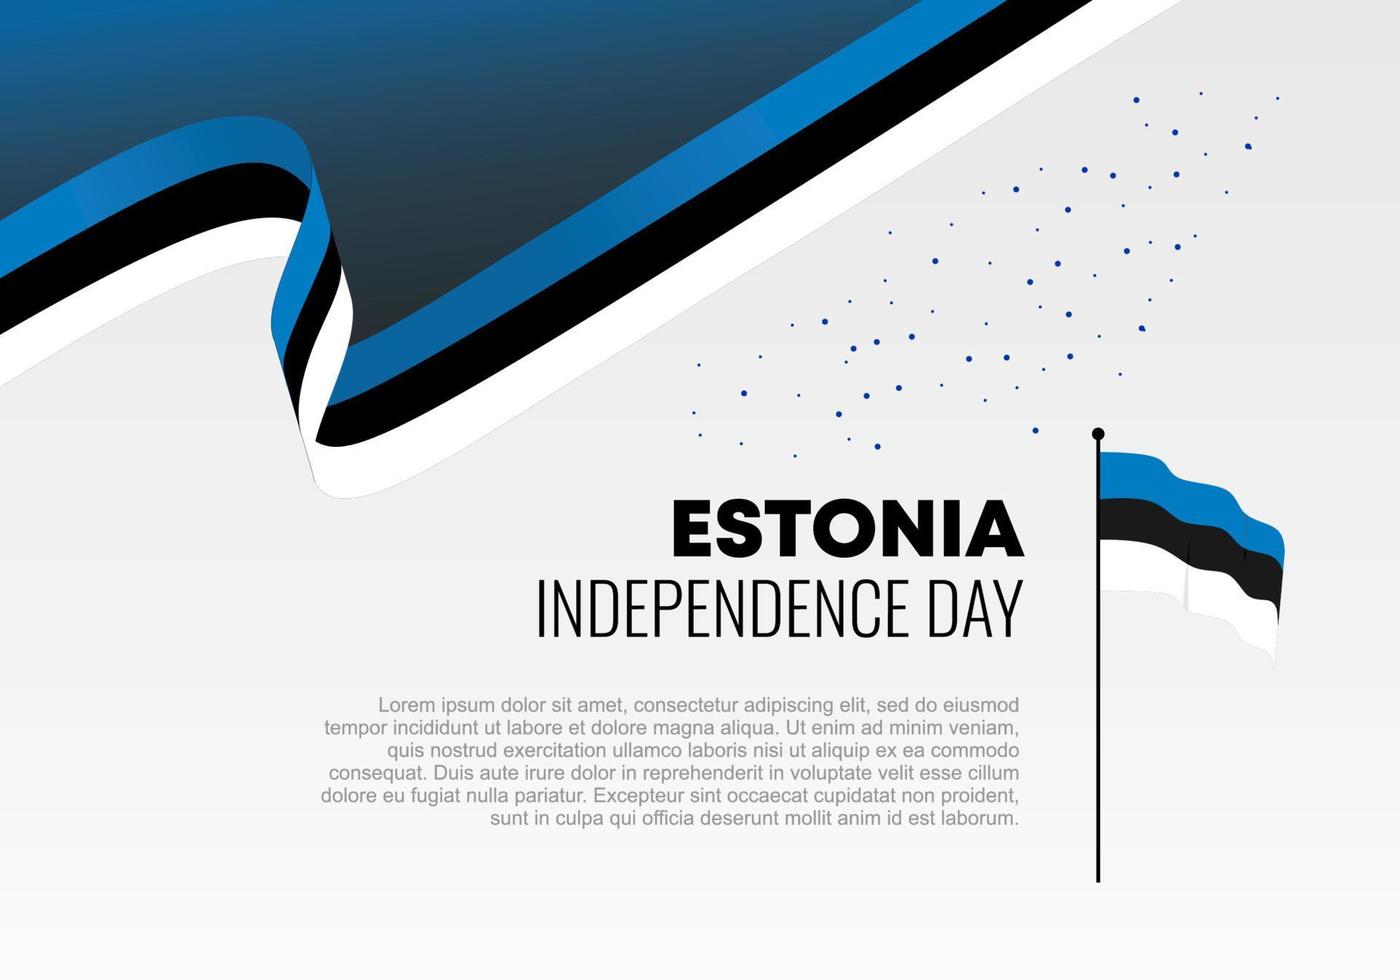 Estlands självständighetsdag för nationellt firande den 24 februari. vektor